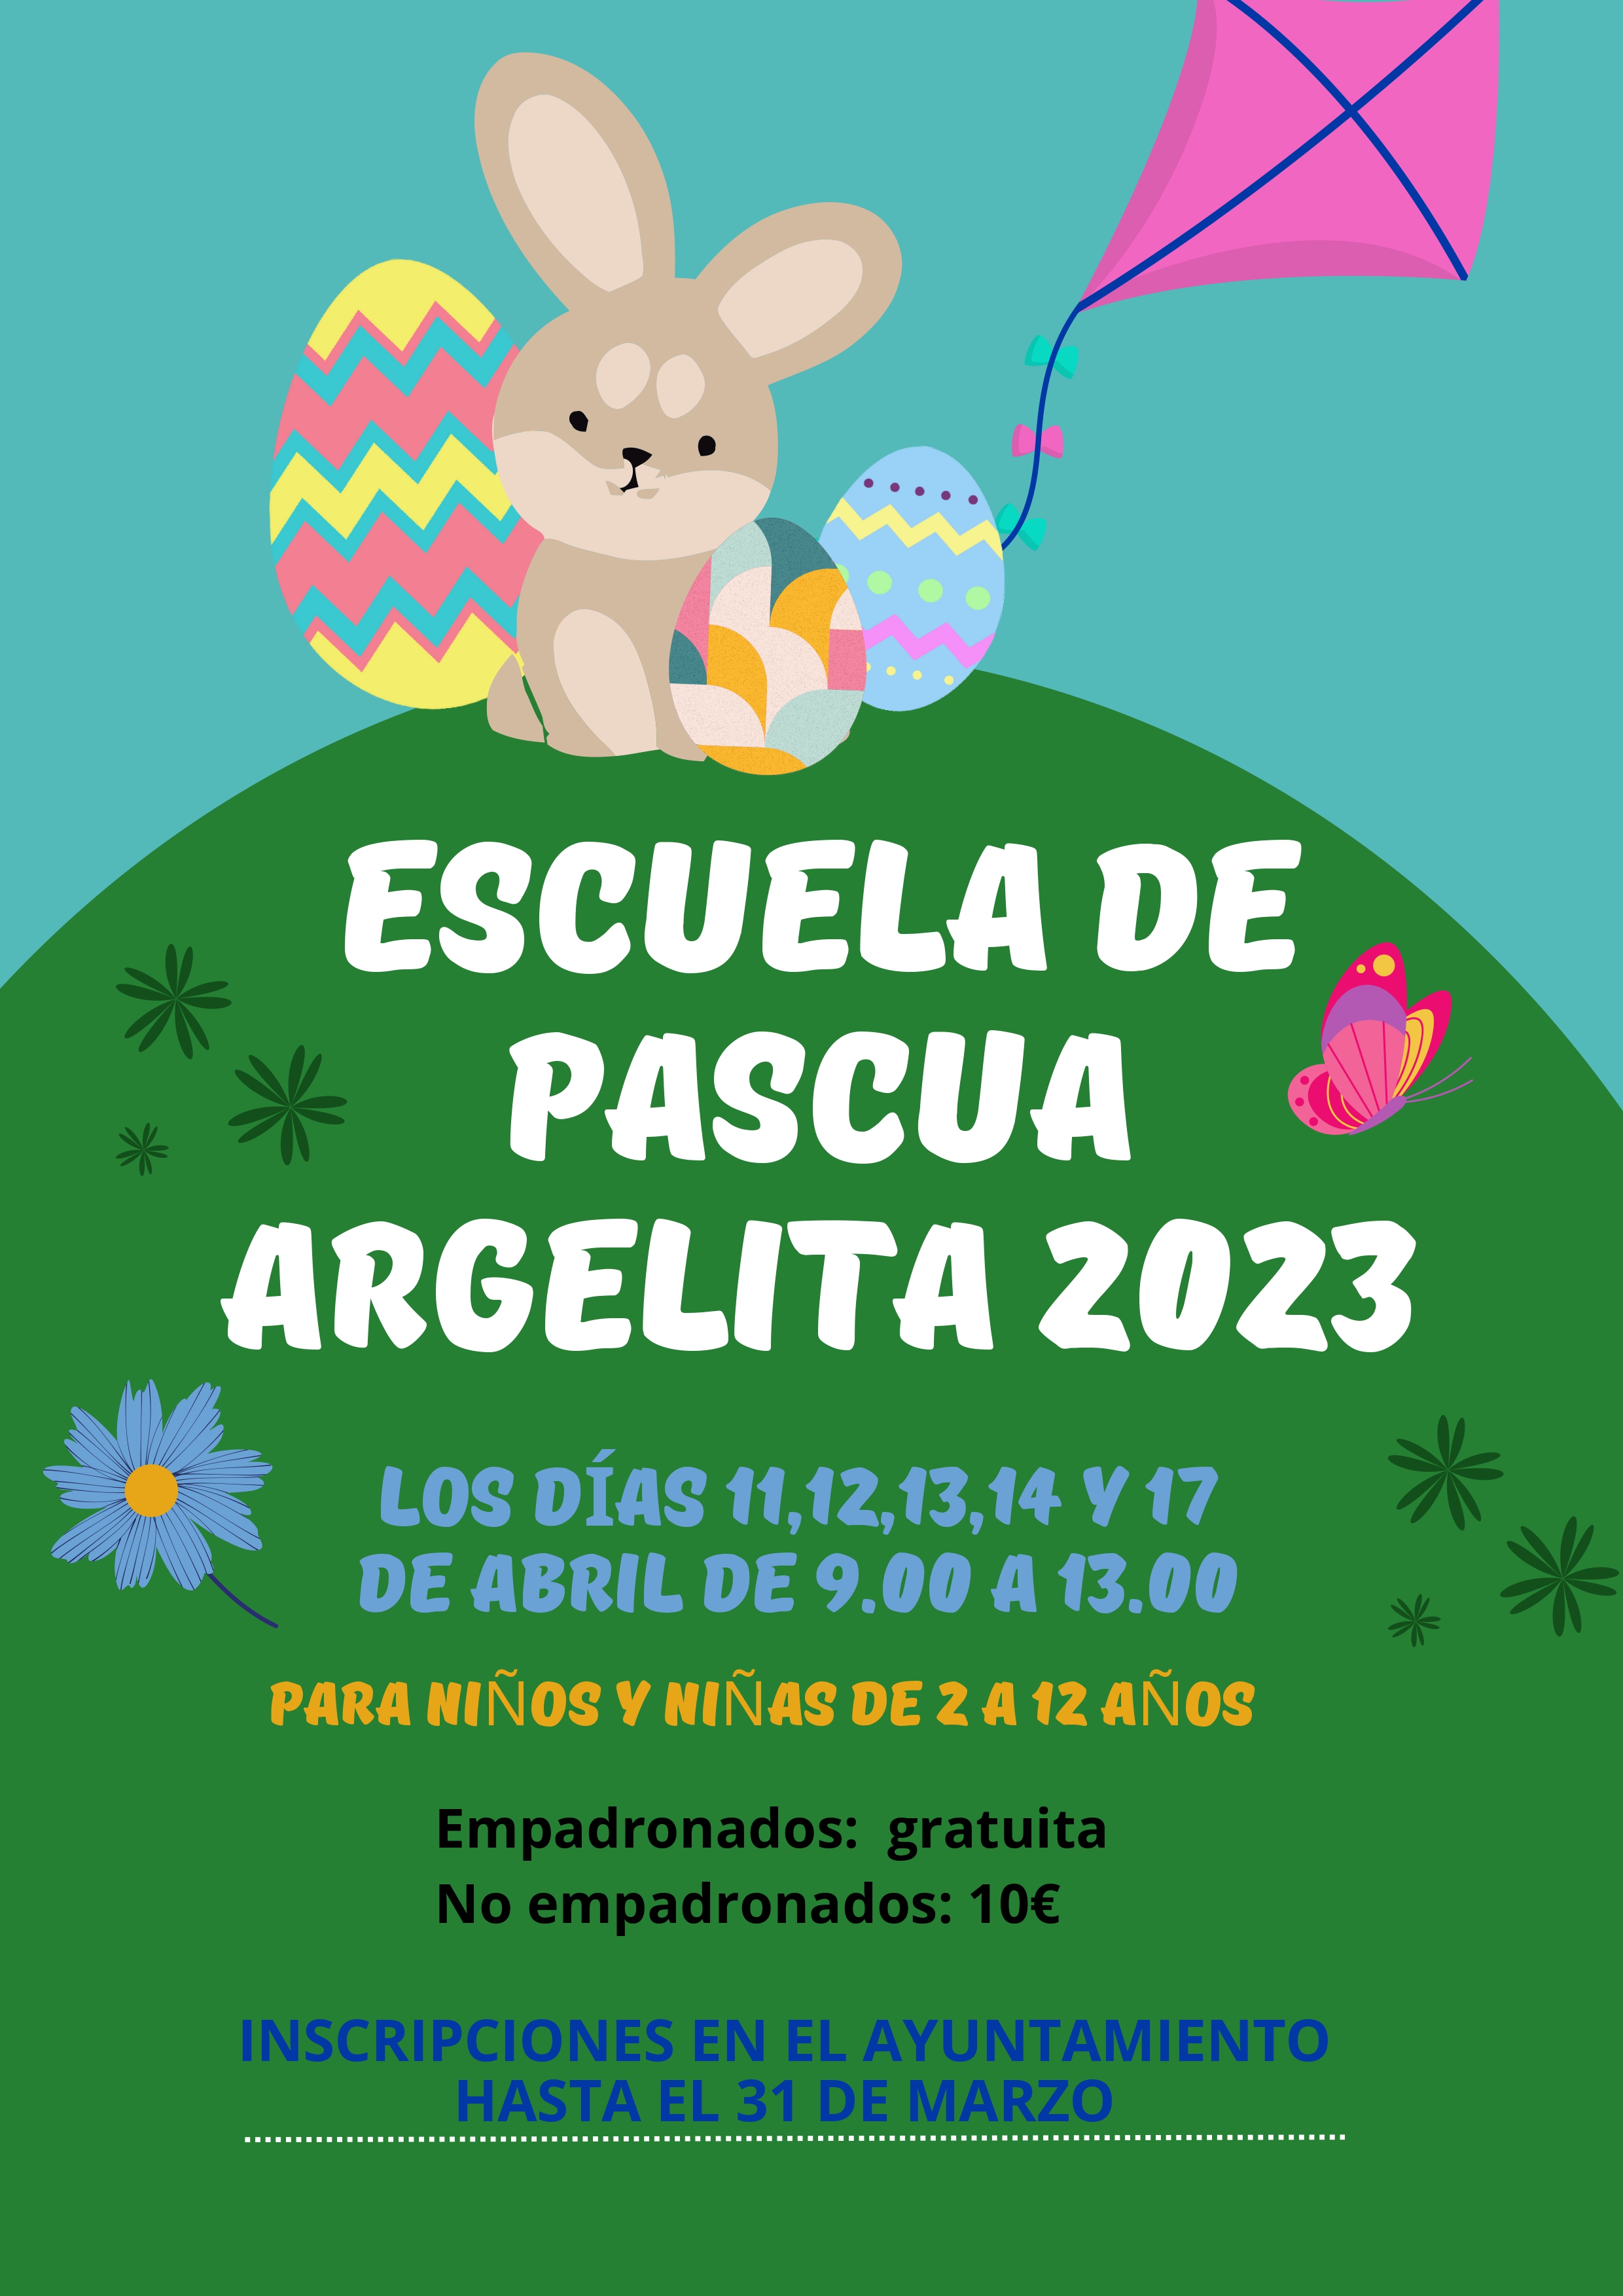 ESCUELA DE PASCUA DE ARGELITA 2023